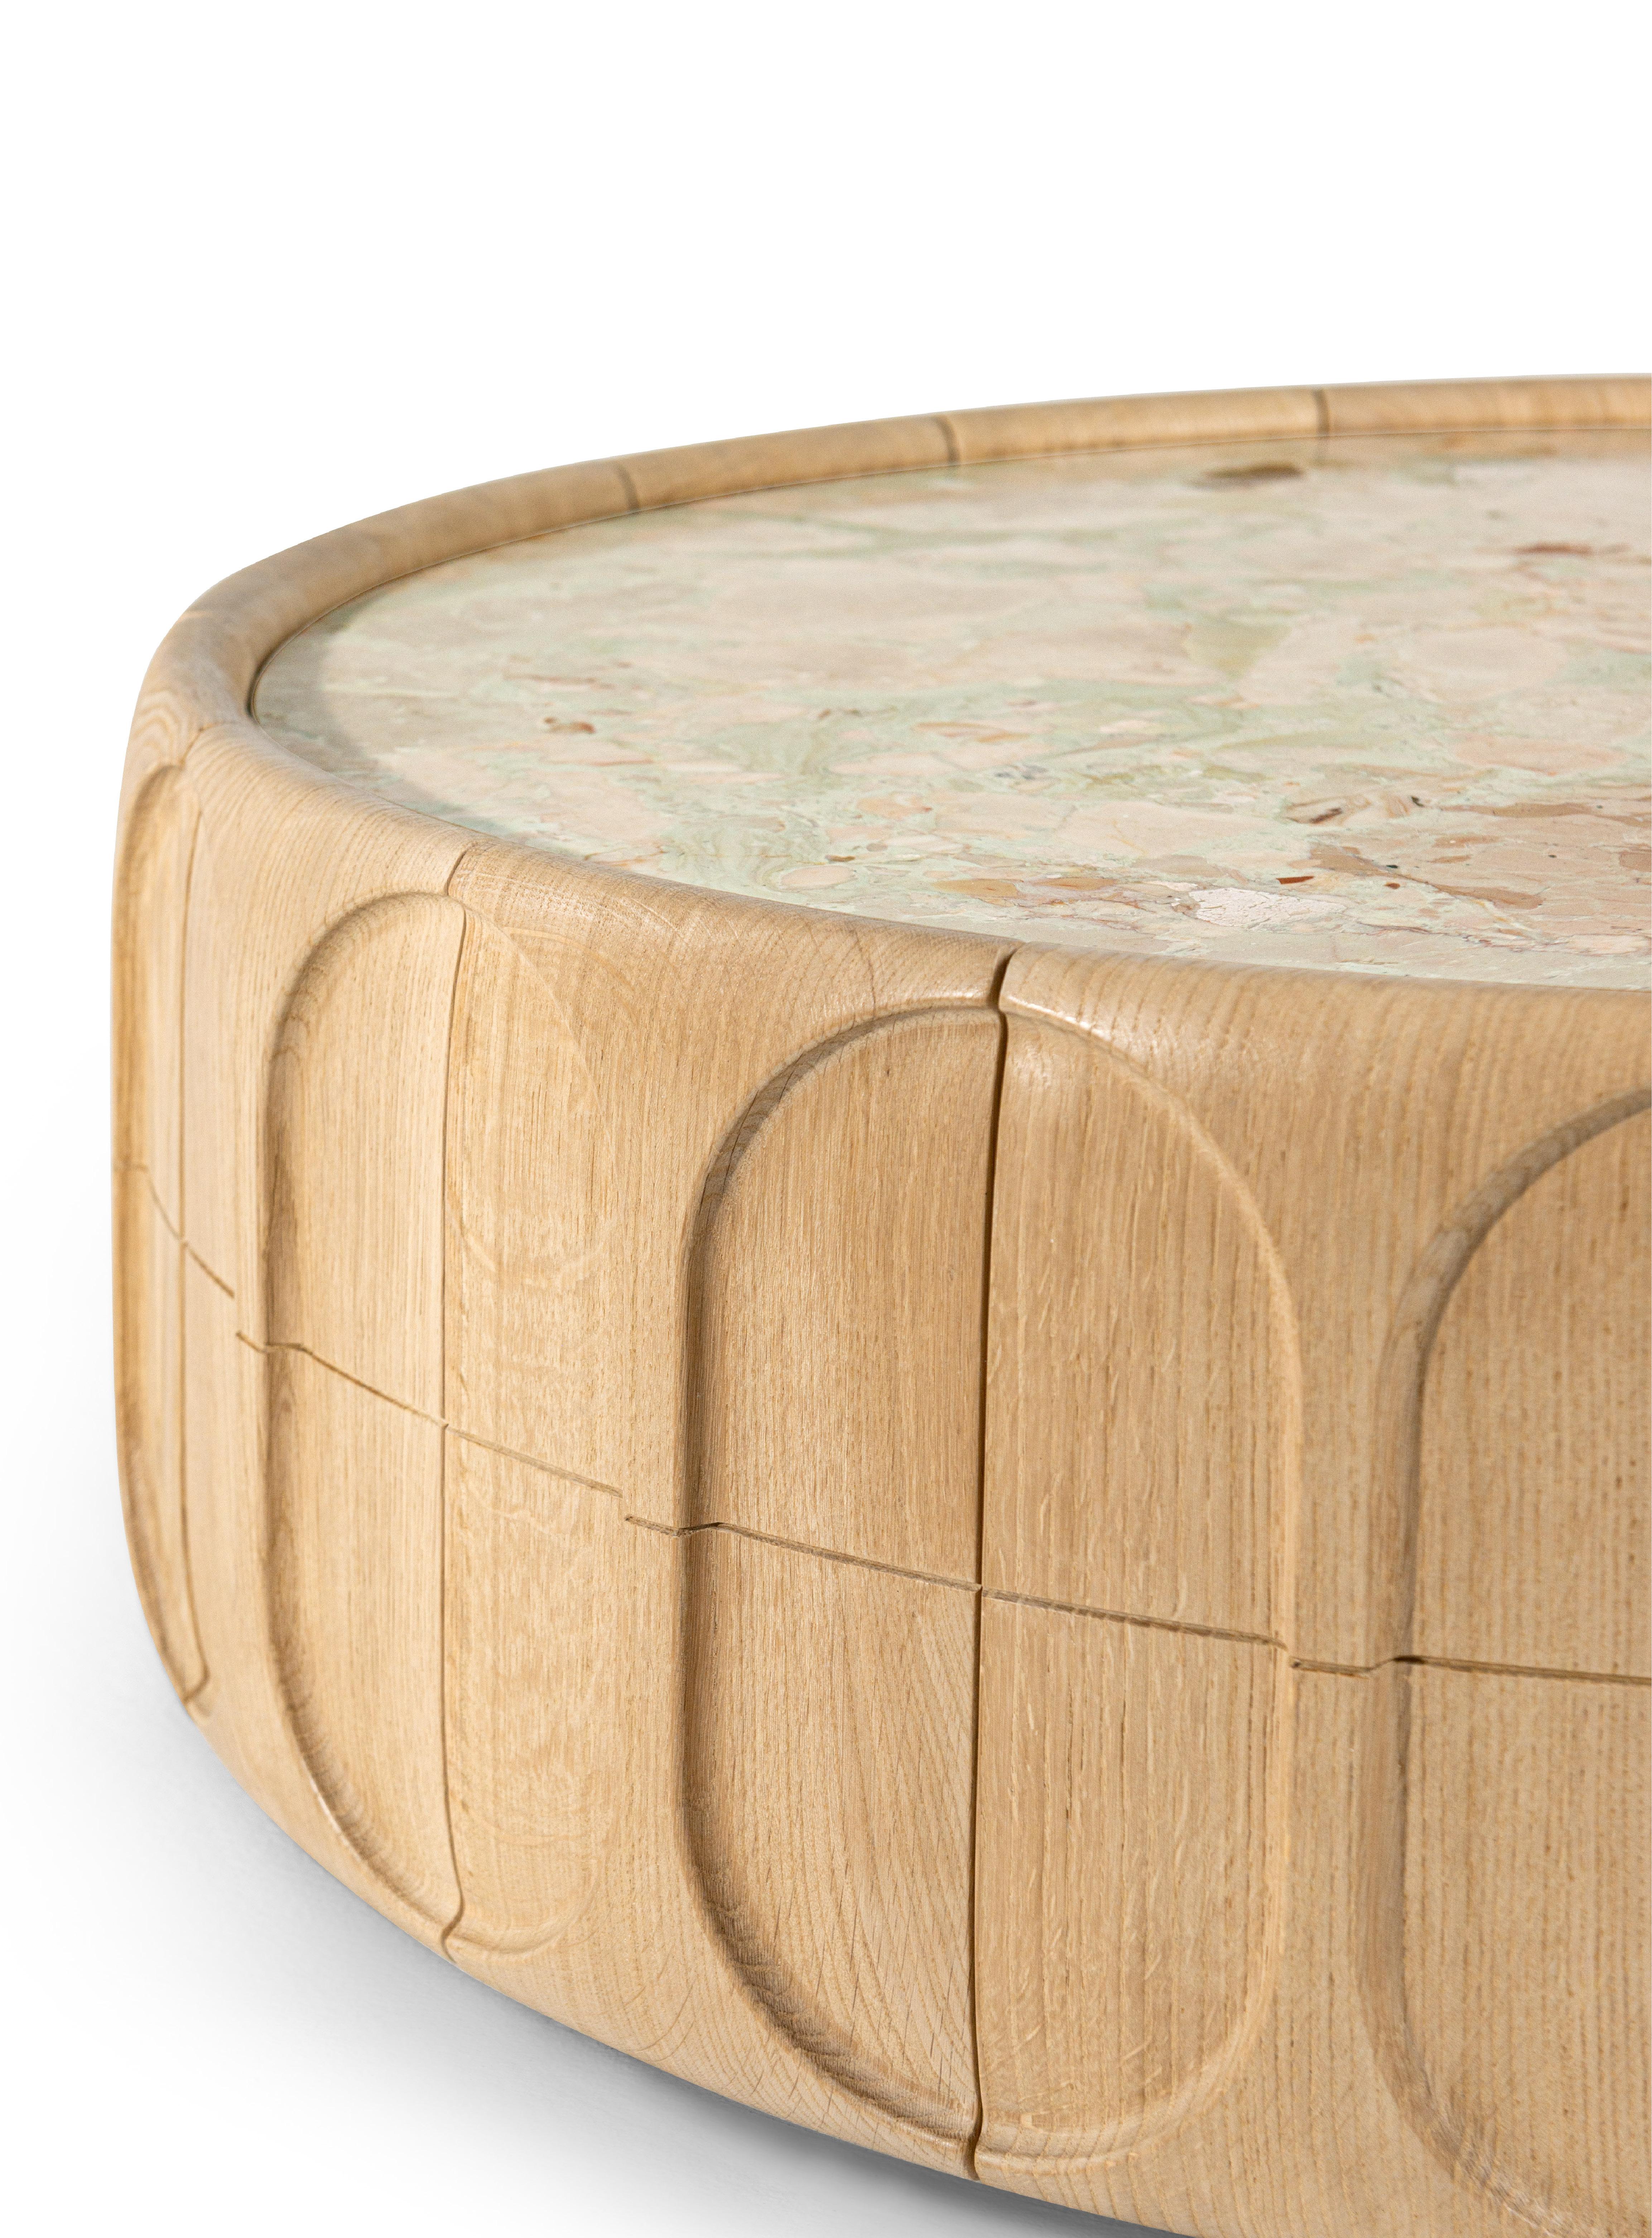 La table basse Concave présente un design minimal mais sophistiqué, mis en valeur par la structure en bois de chêne naturel et le plateau en marbre Textured Ceppo Romano. Il enrichit l'espace de vie d'une touche sculpturale et se caractérise par une